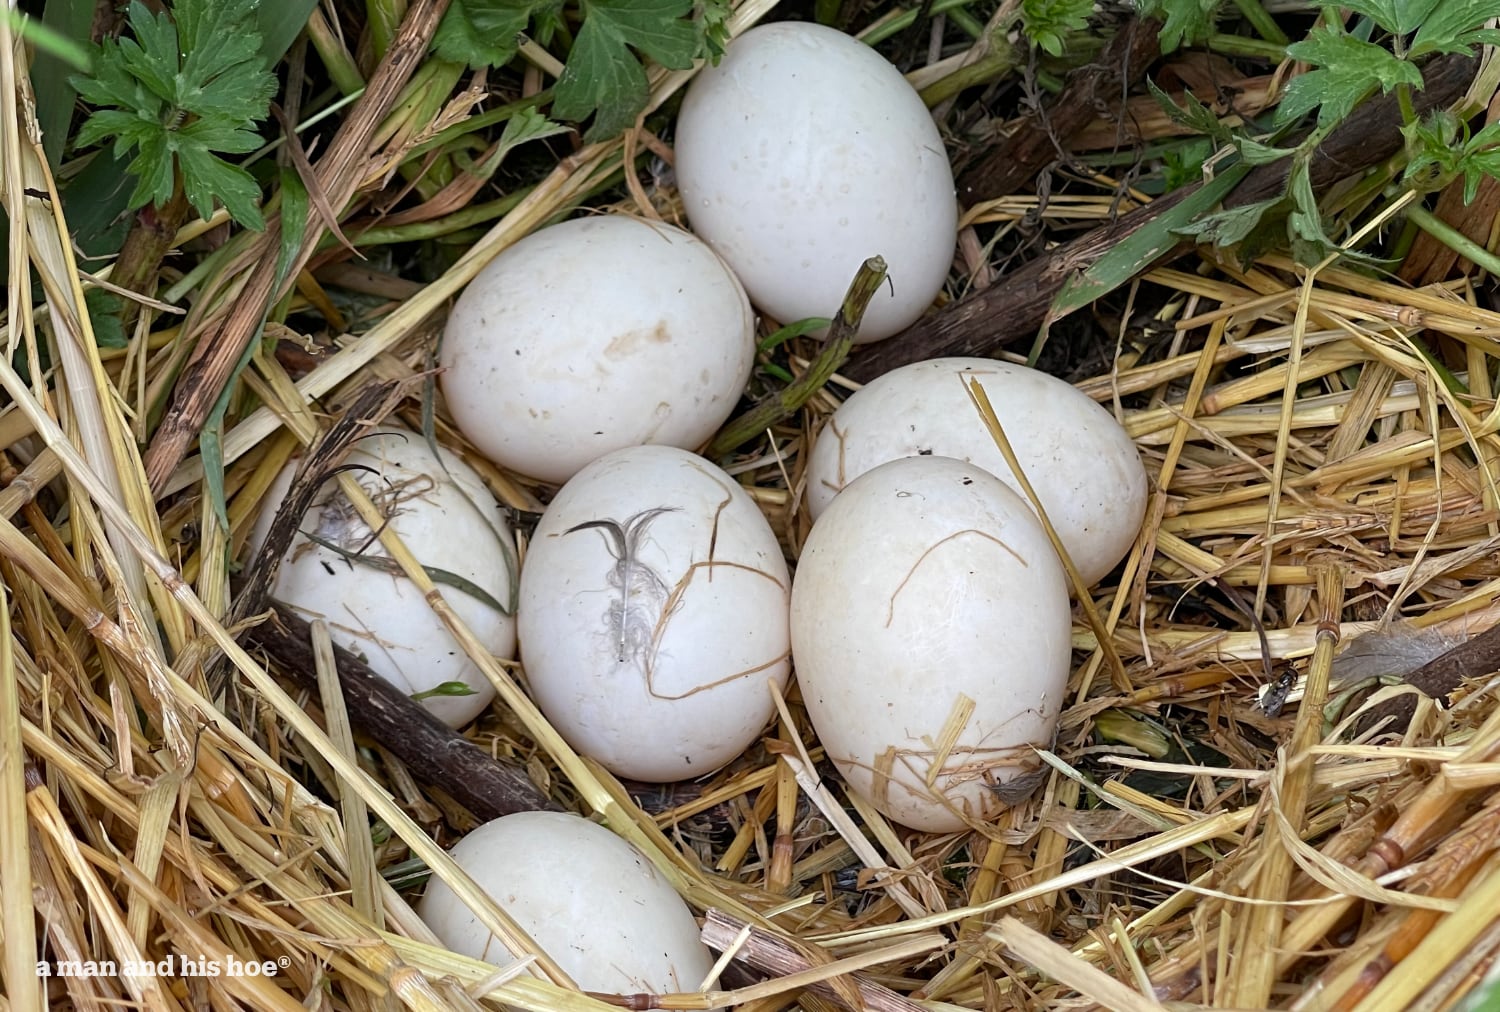 Seven duck eggs in next